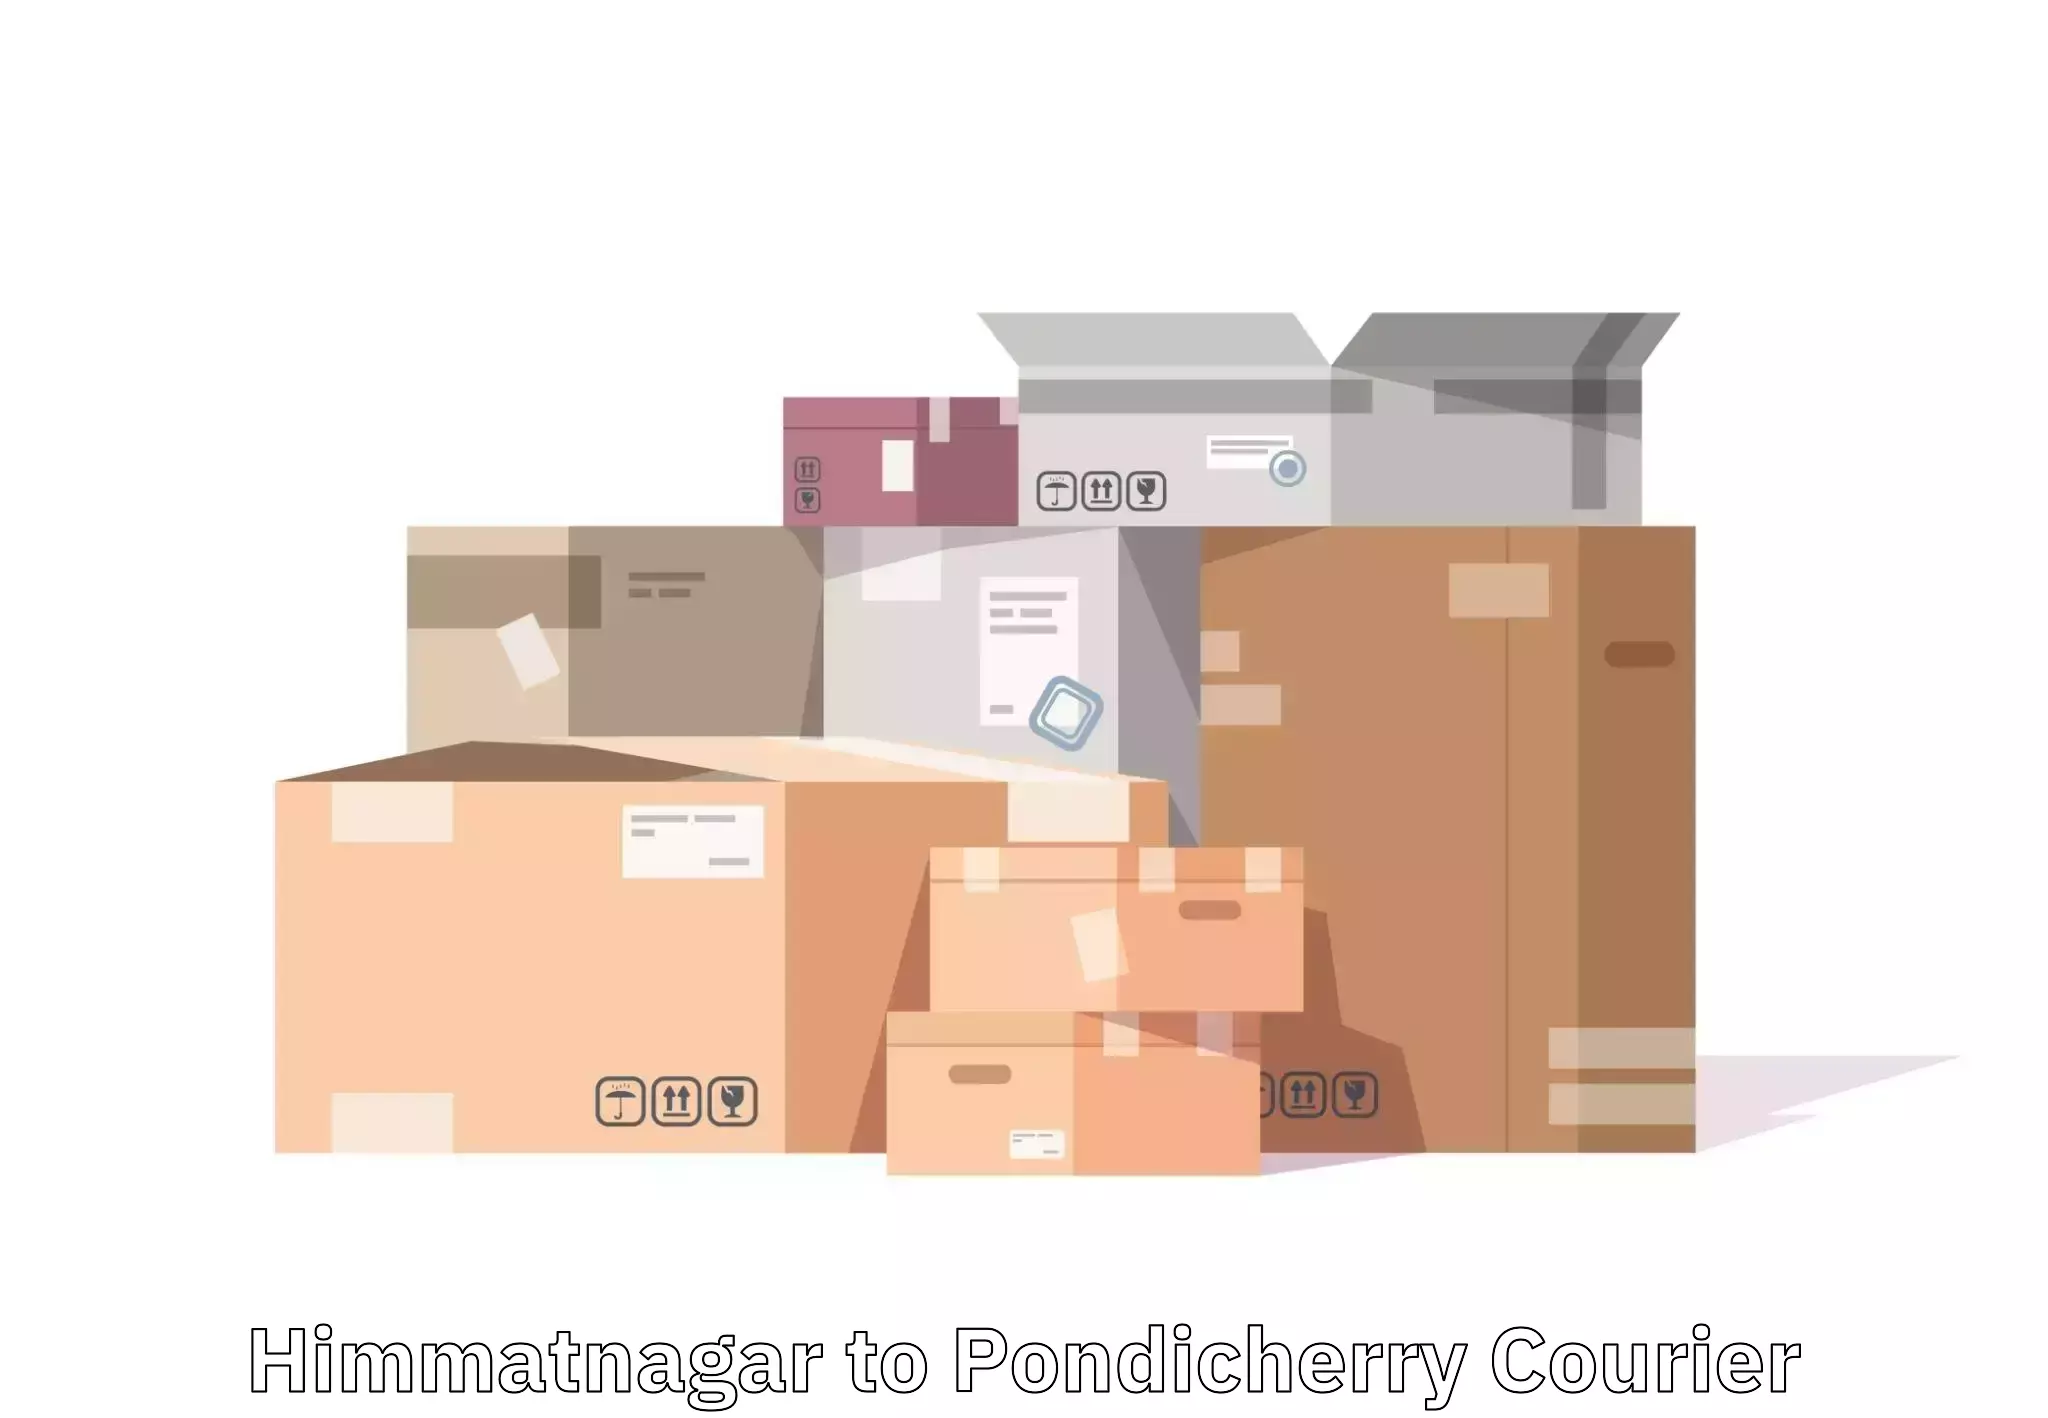 Luggage transport consultancy in Himmatnagar to Pondicherry